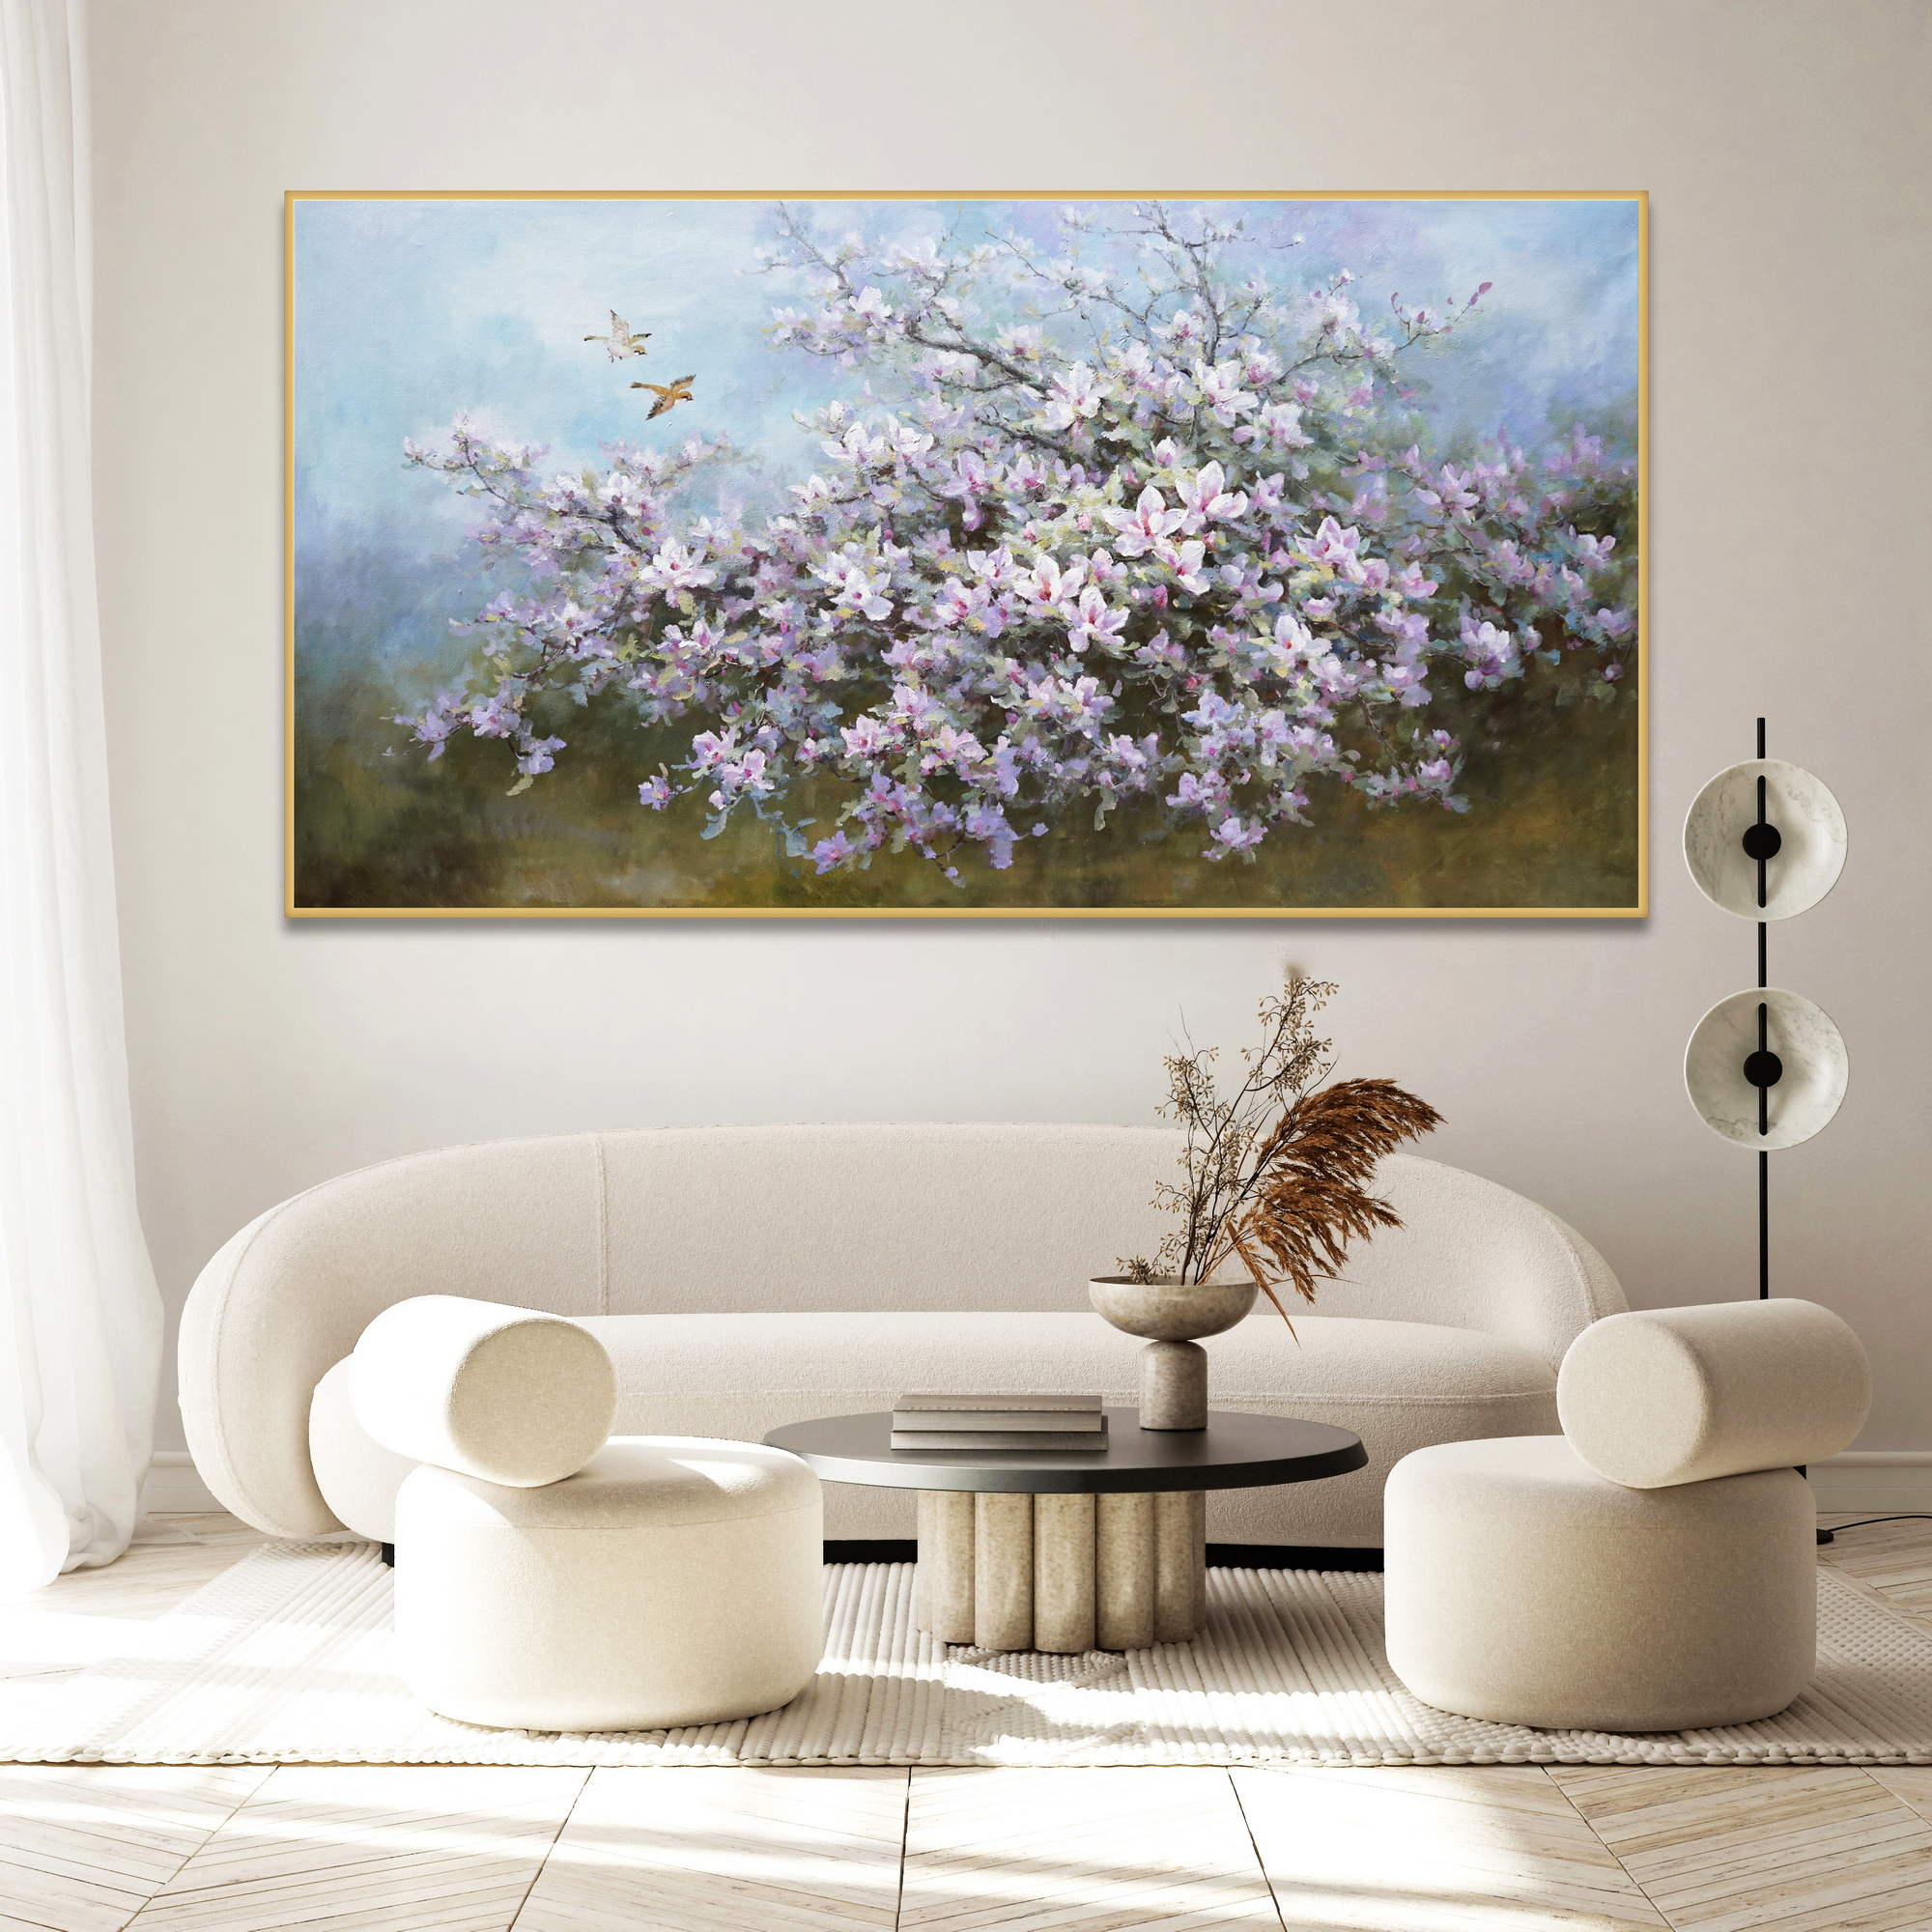 Dipinto di un ramo di magnolia in fiore con uccelli in volo